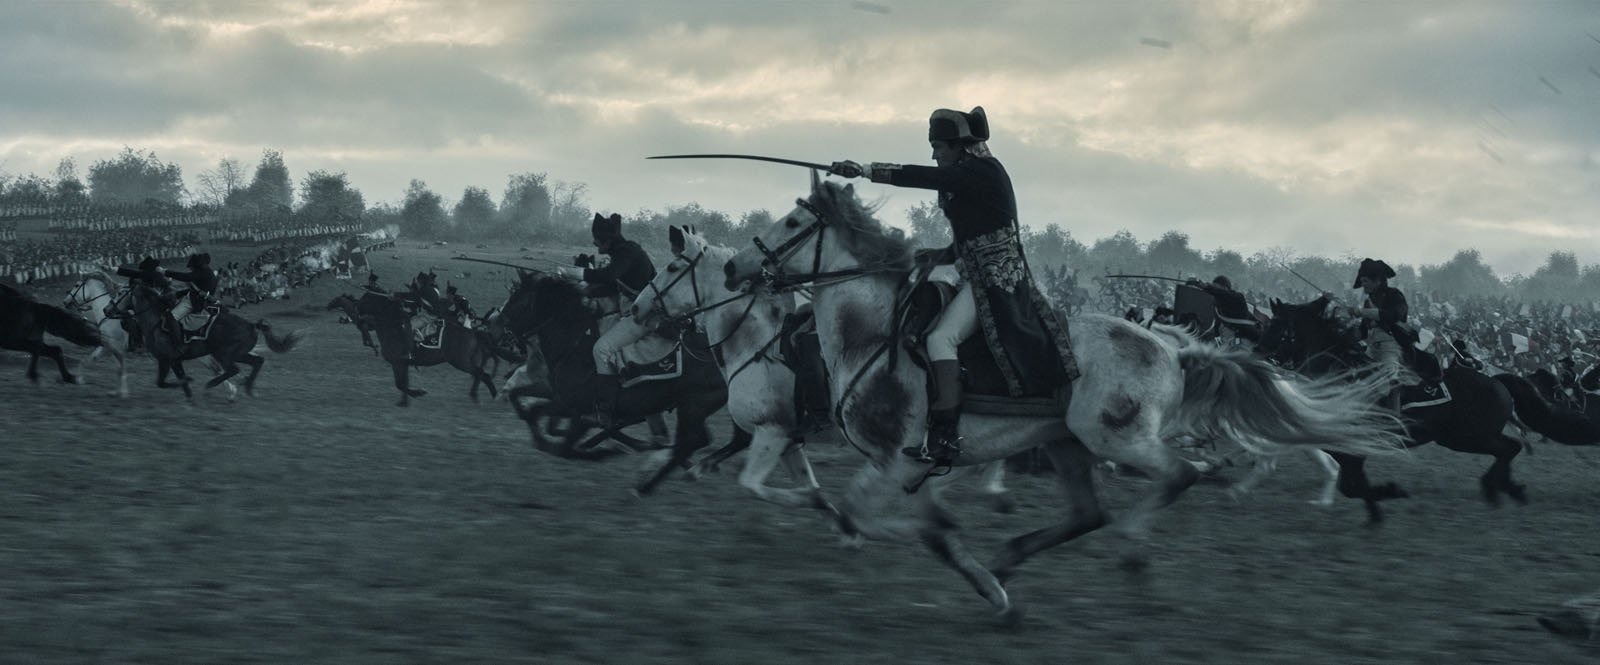 Charge de cavalerie, Joaquin Phoenix au premier plan dans Napoléon de Ridley Scott